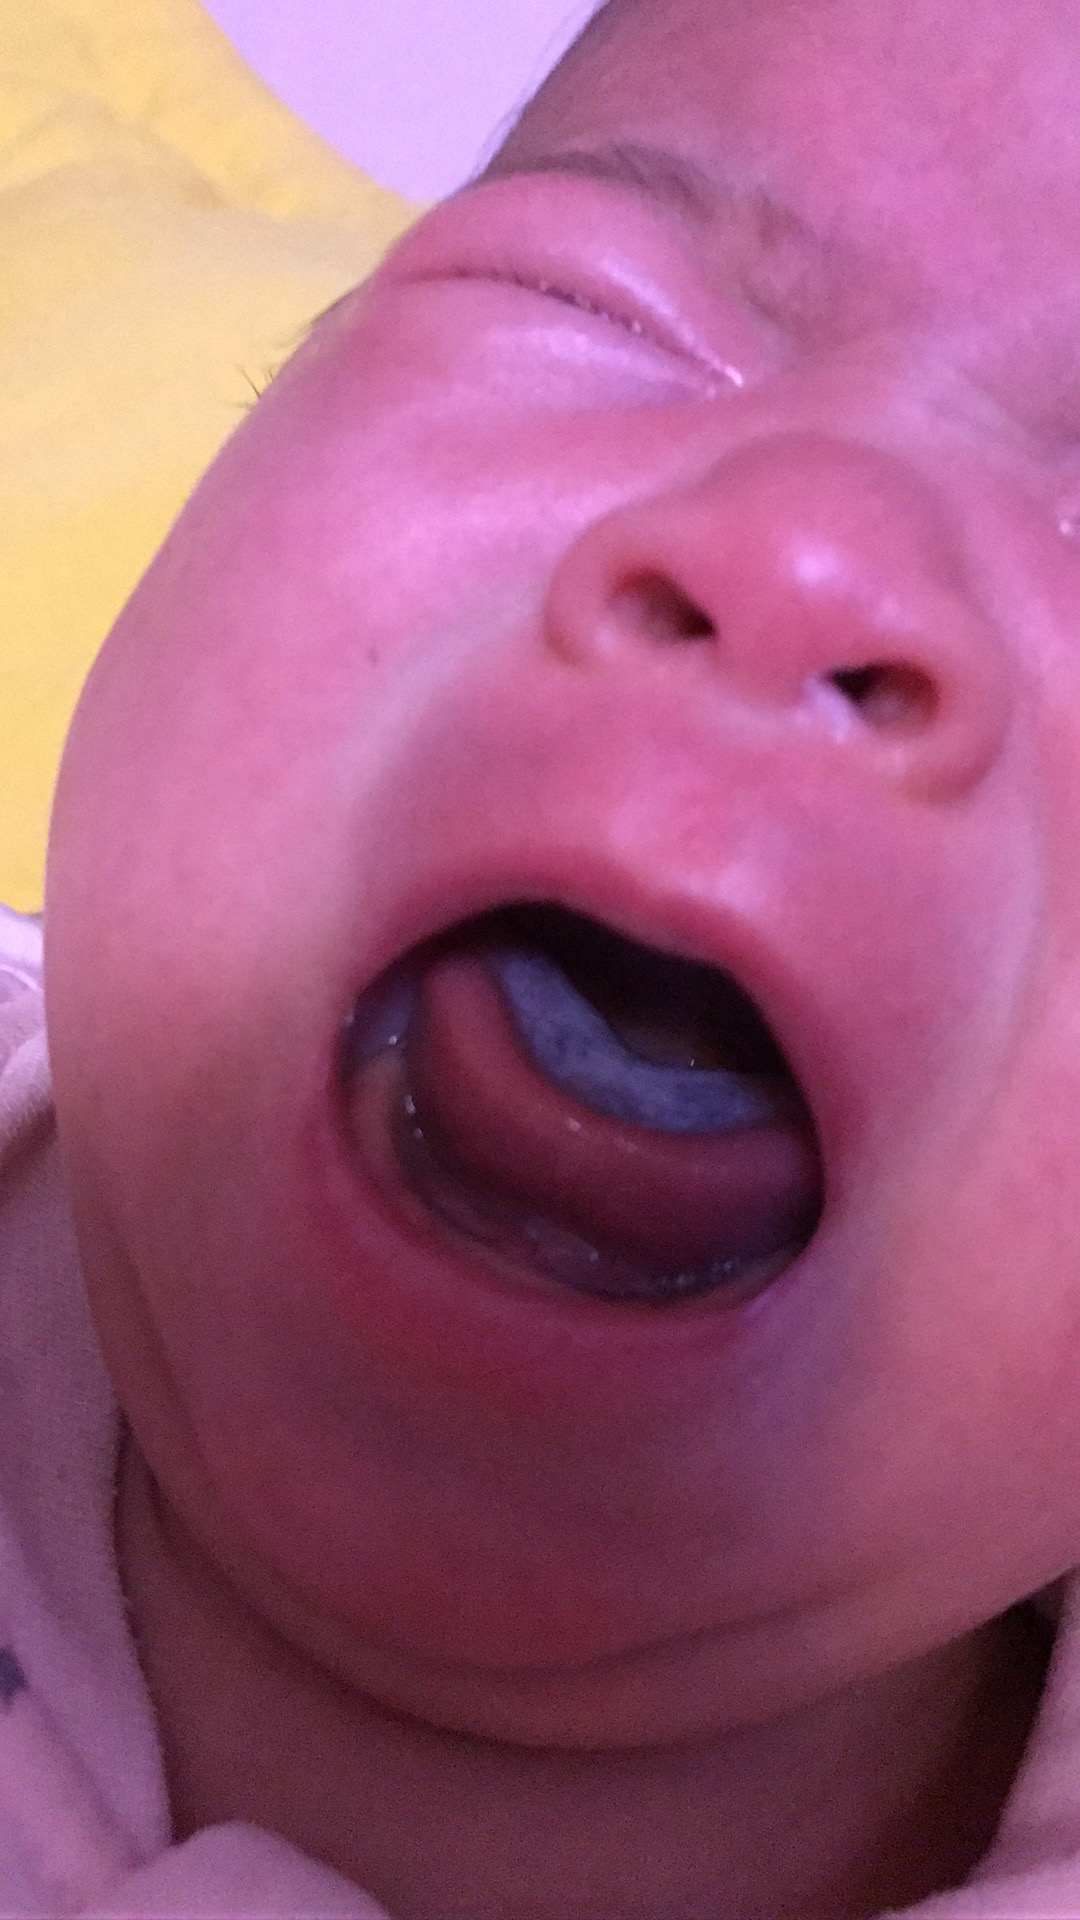 宝宝吃母乳的舌头图片图片